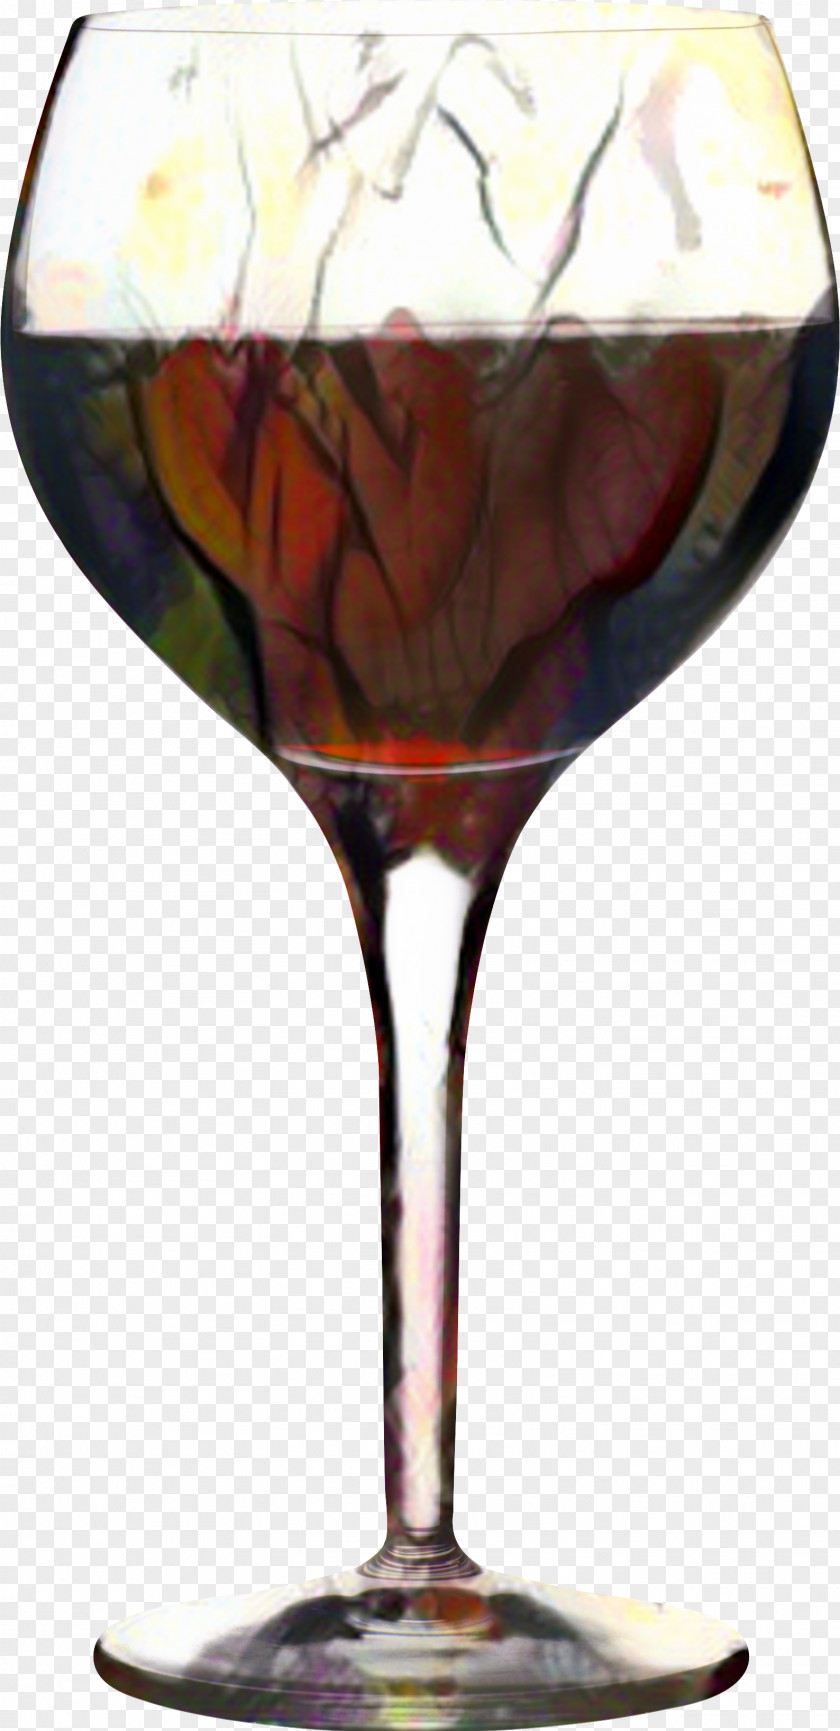 Kir Royale Distilled Beverage Wine Glass PNG